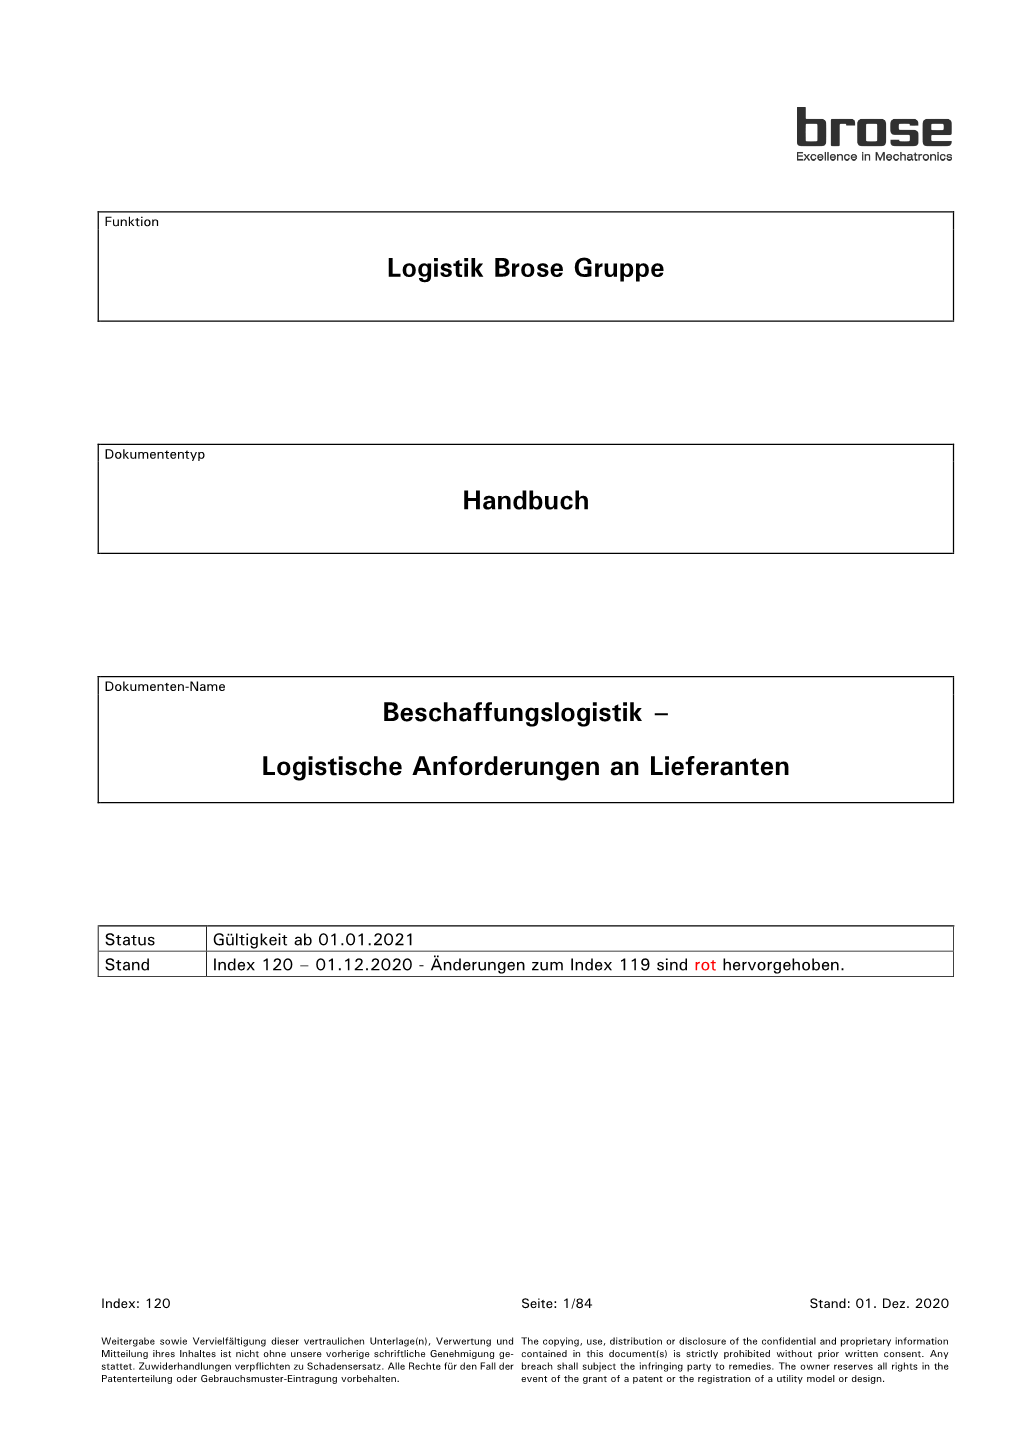 Logistik Brose Gruppe Handbuch Beschaffungslogistik